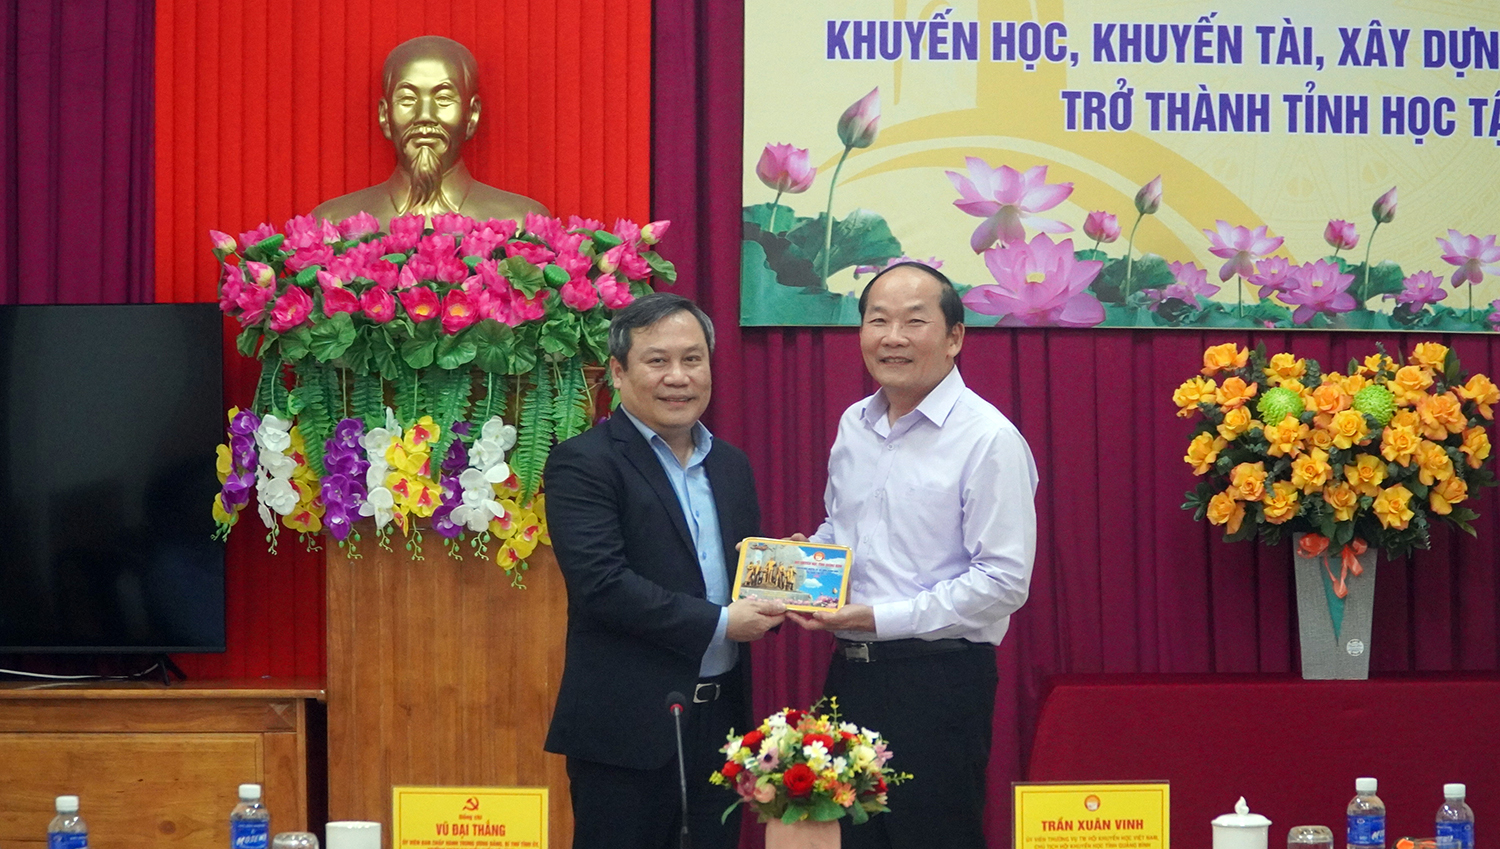 Đồng chí Trần Xuân Vinh, Chủ tịch Hội Khuyến học tỉnh tặng biểu trưng của Hội Khuyến học tỉnh cho đồng chí Bí thư Tỉnh ủy Vũ Đại Thắng